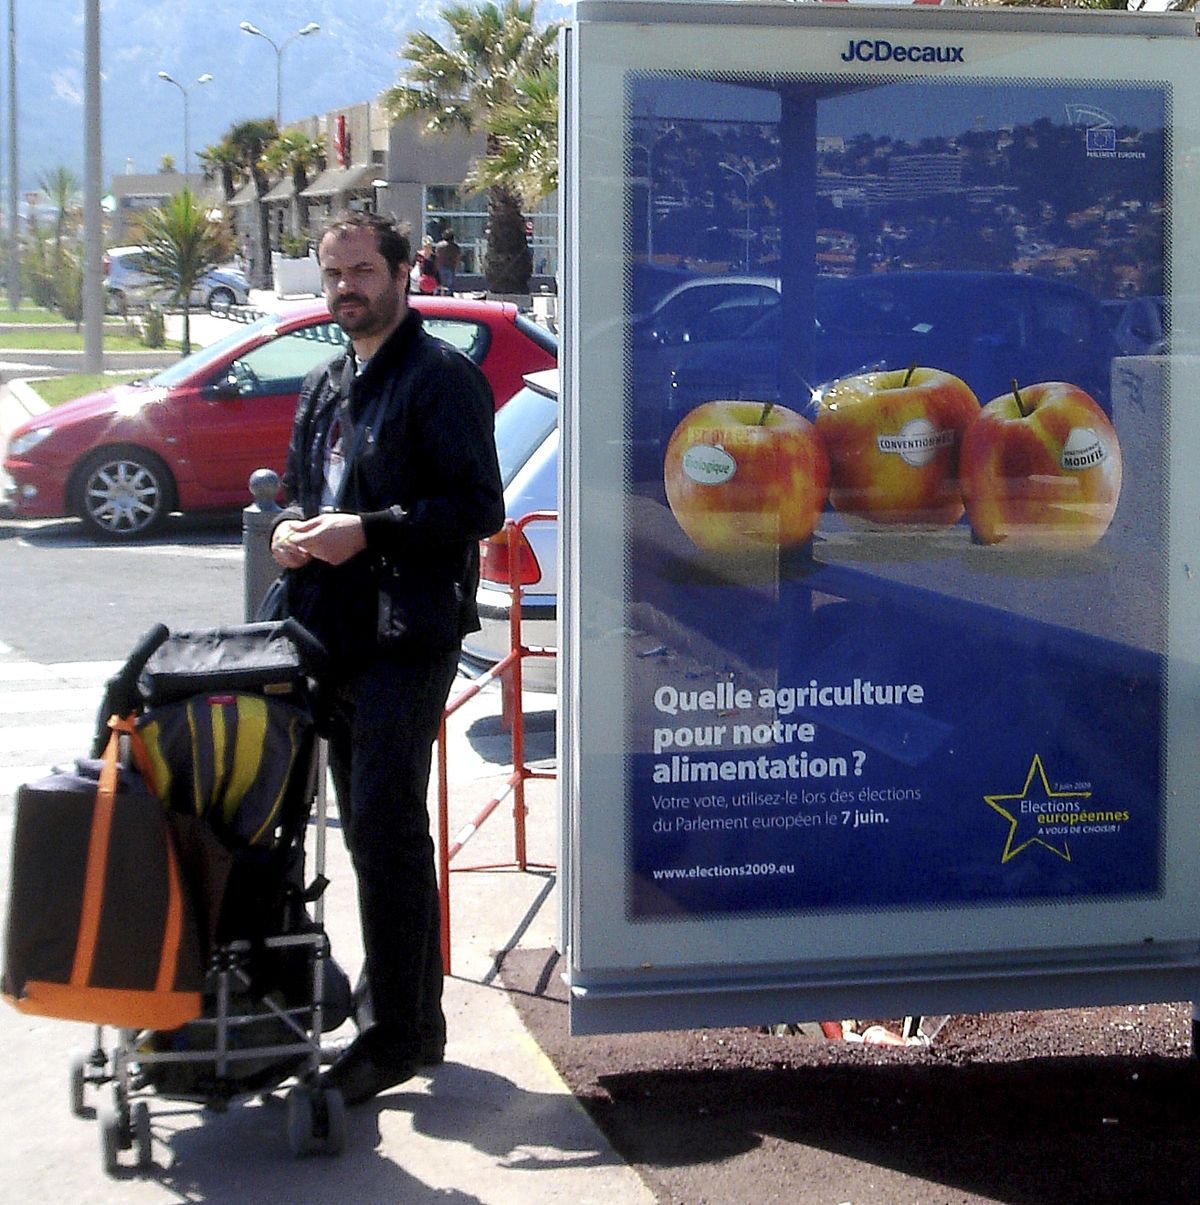 Реклама на одной из улиц Марселя, Франция, призывает людей голосовать на европейских выборах 2009 года.